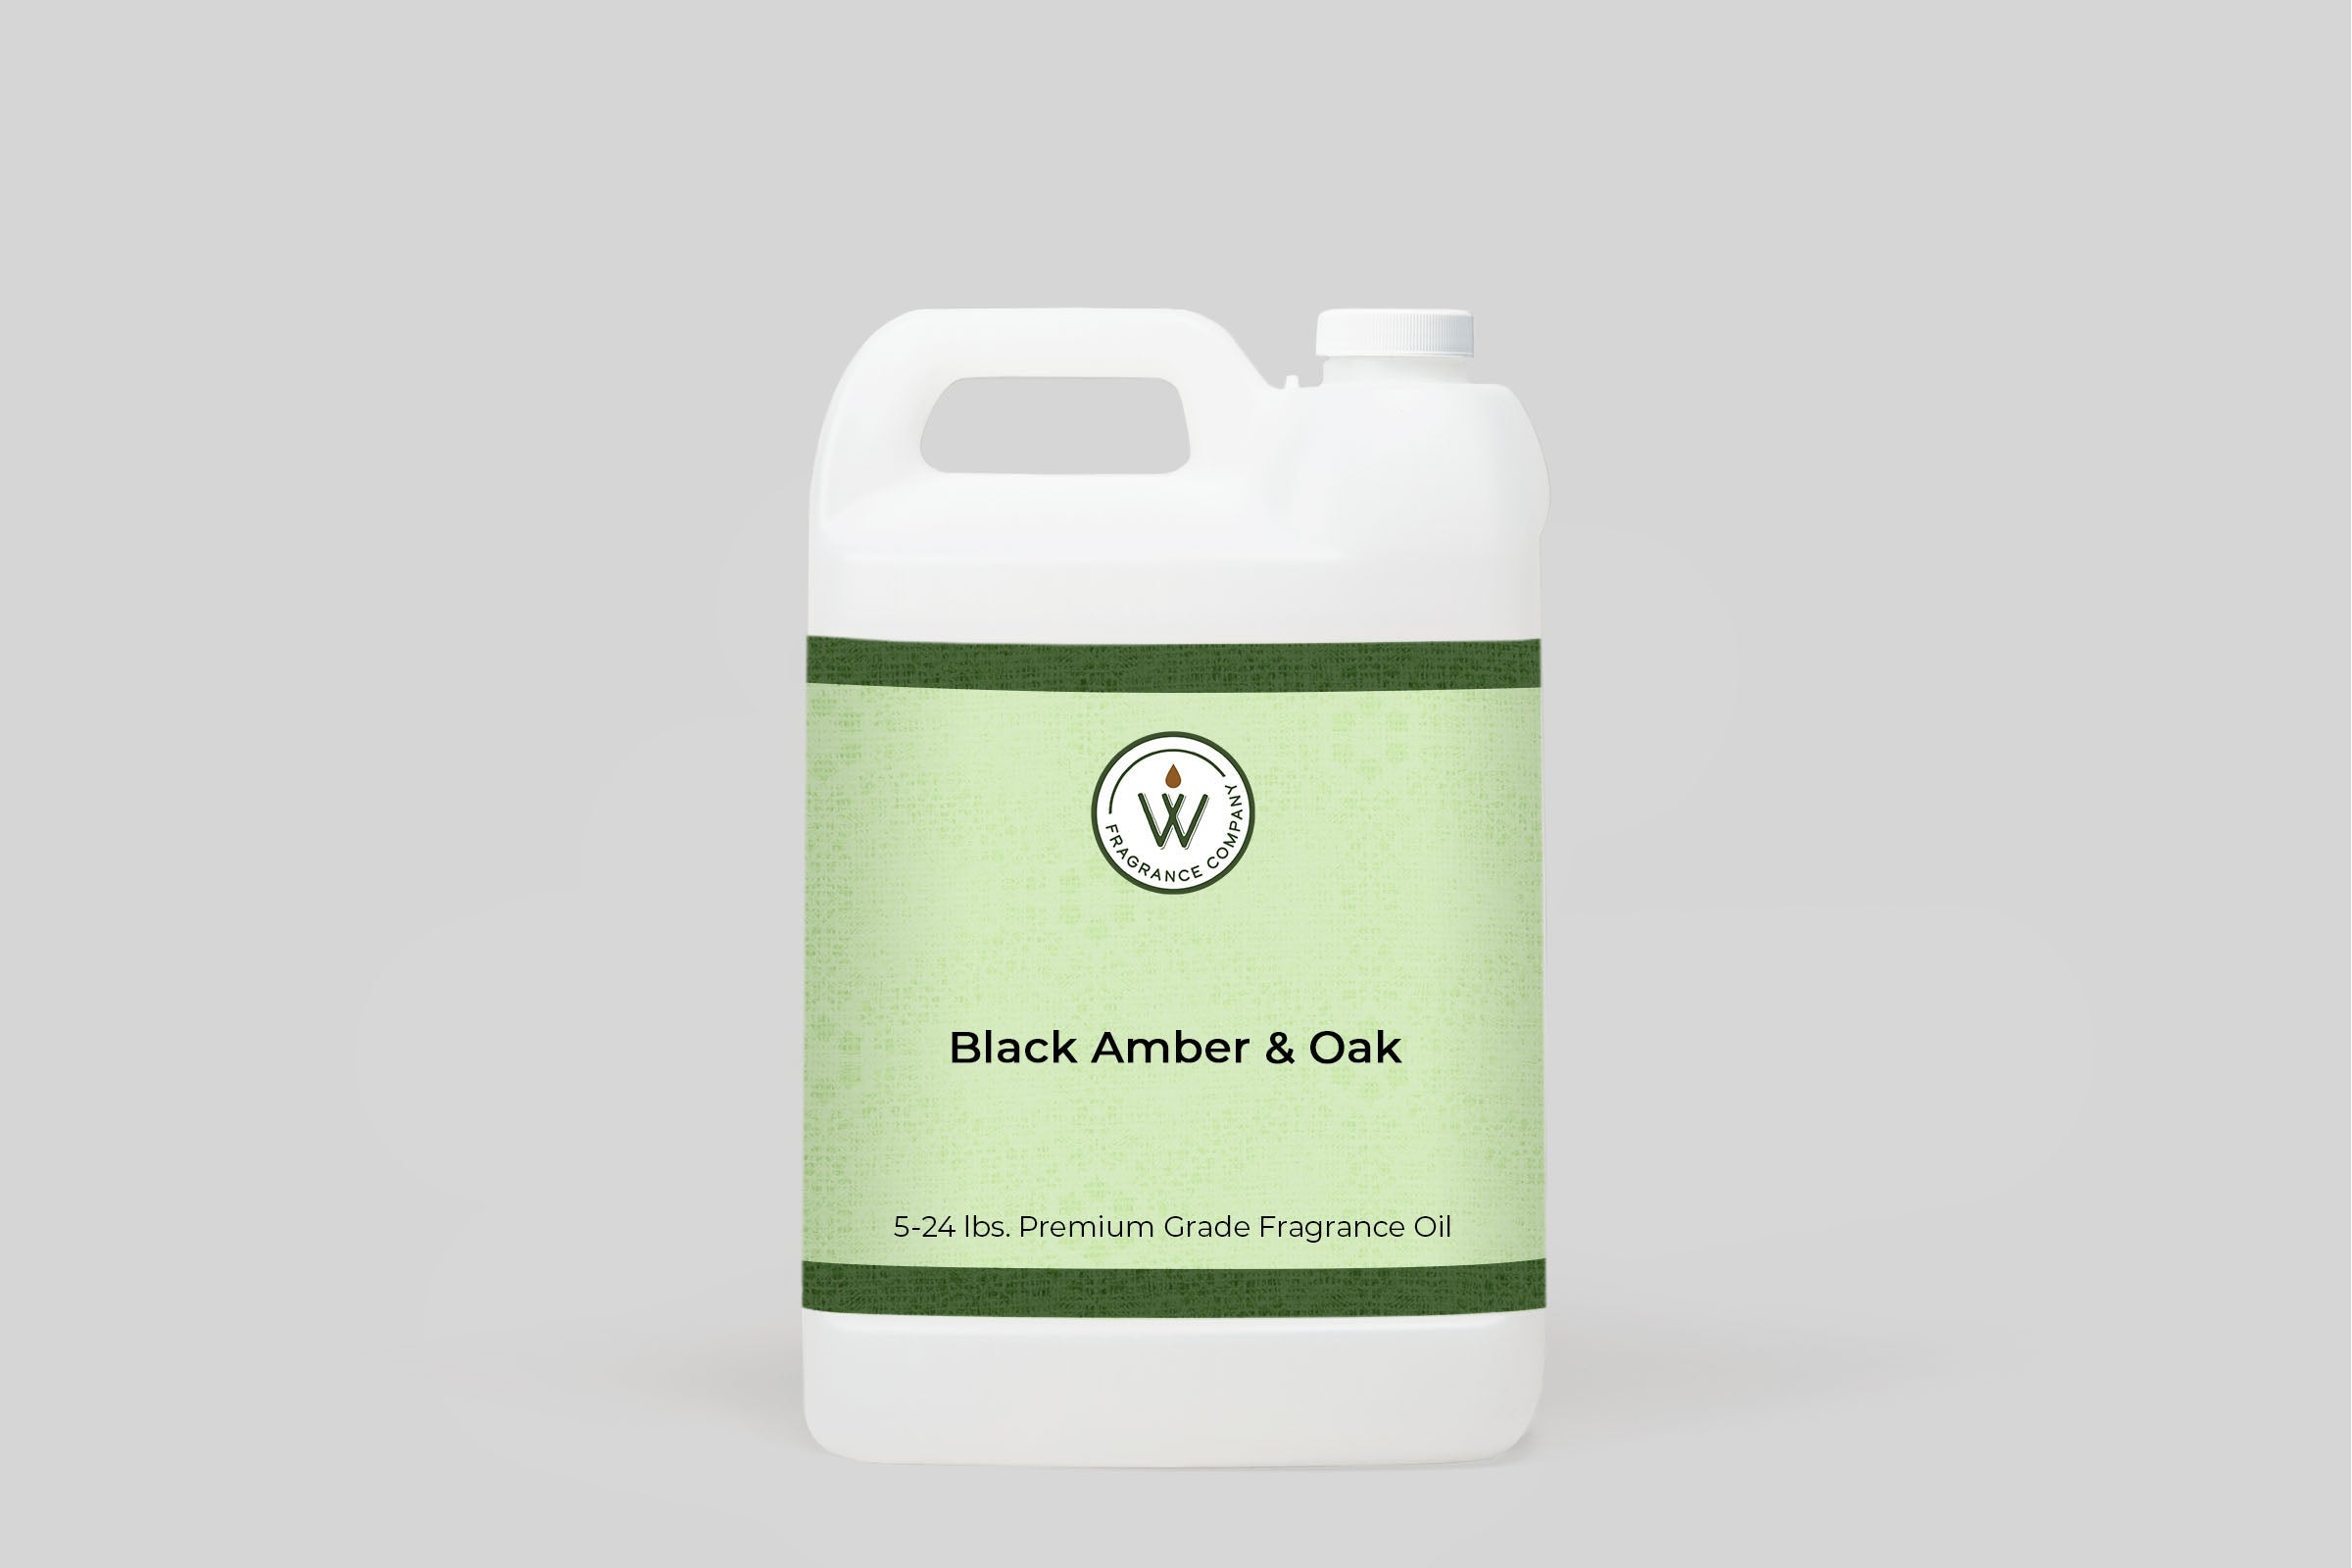 Black Amber & Oak Fragrance Oil